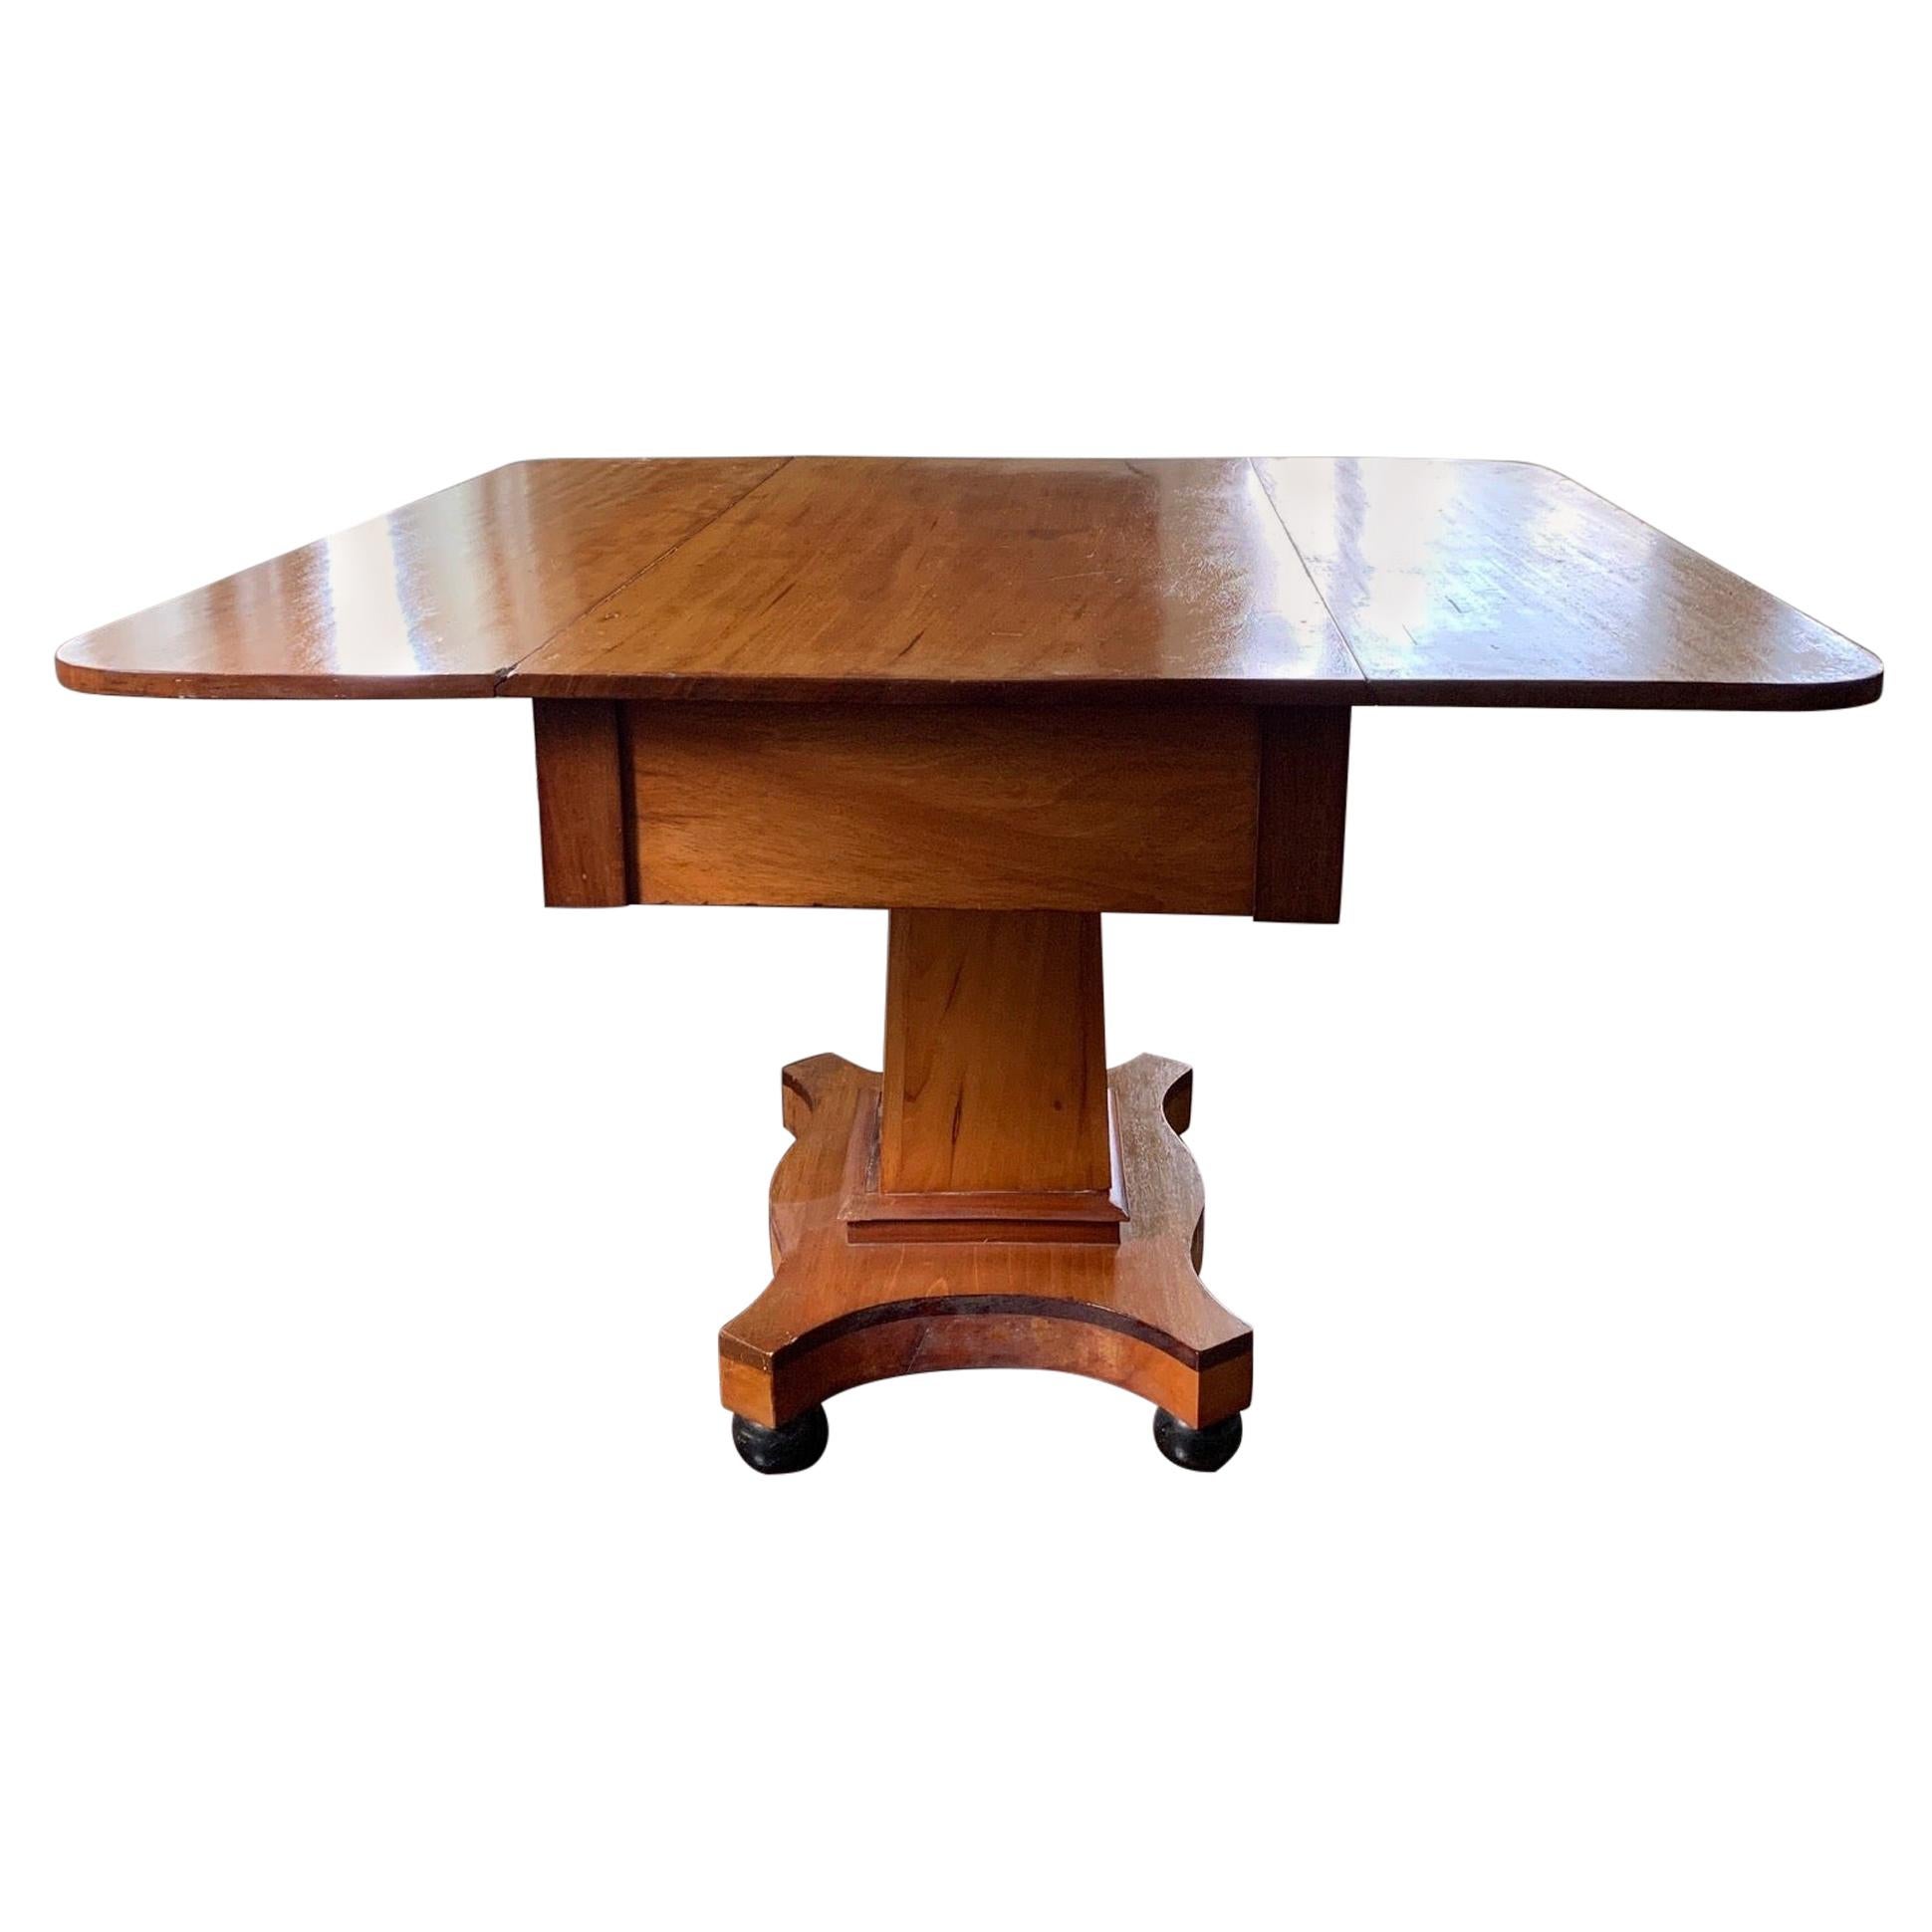 Amerikanischer Empire-Tisch mit blattförmigem Ausziehtisch, um 1880, von S. K. Pierce & Son, Co.